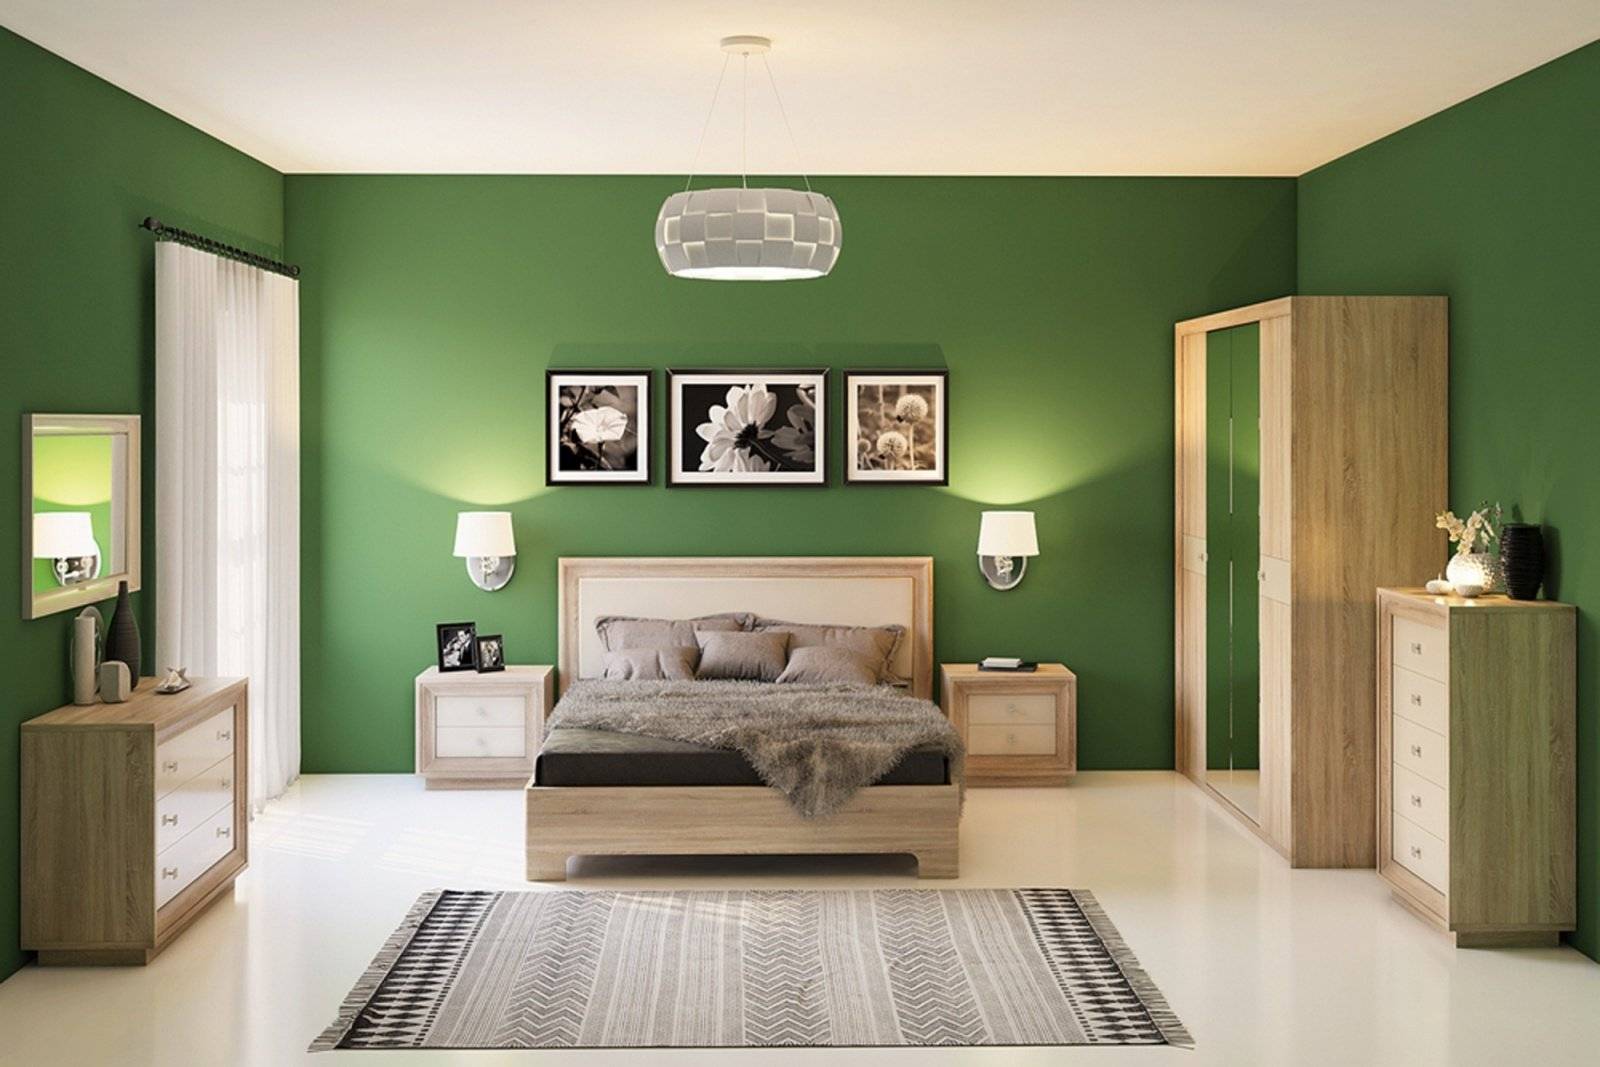 Мебель стеновая. Фисташковый u6501. Спальня Прато Кураж. Спальня в зеленом цвете. Фисташковые стены в интерьере.